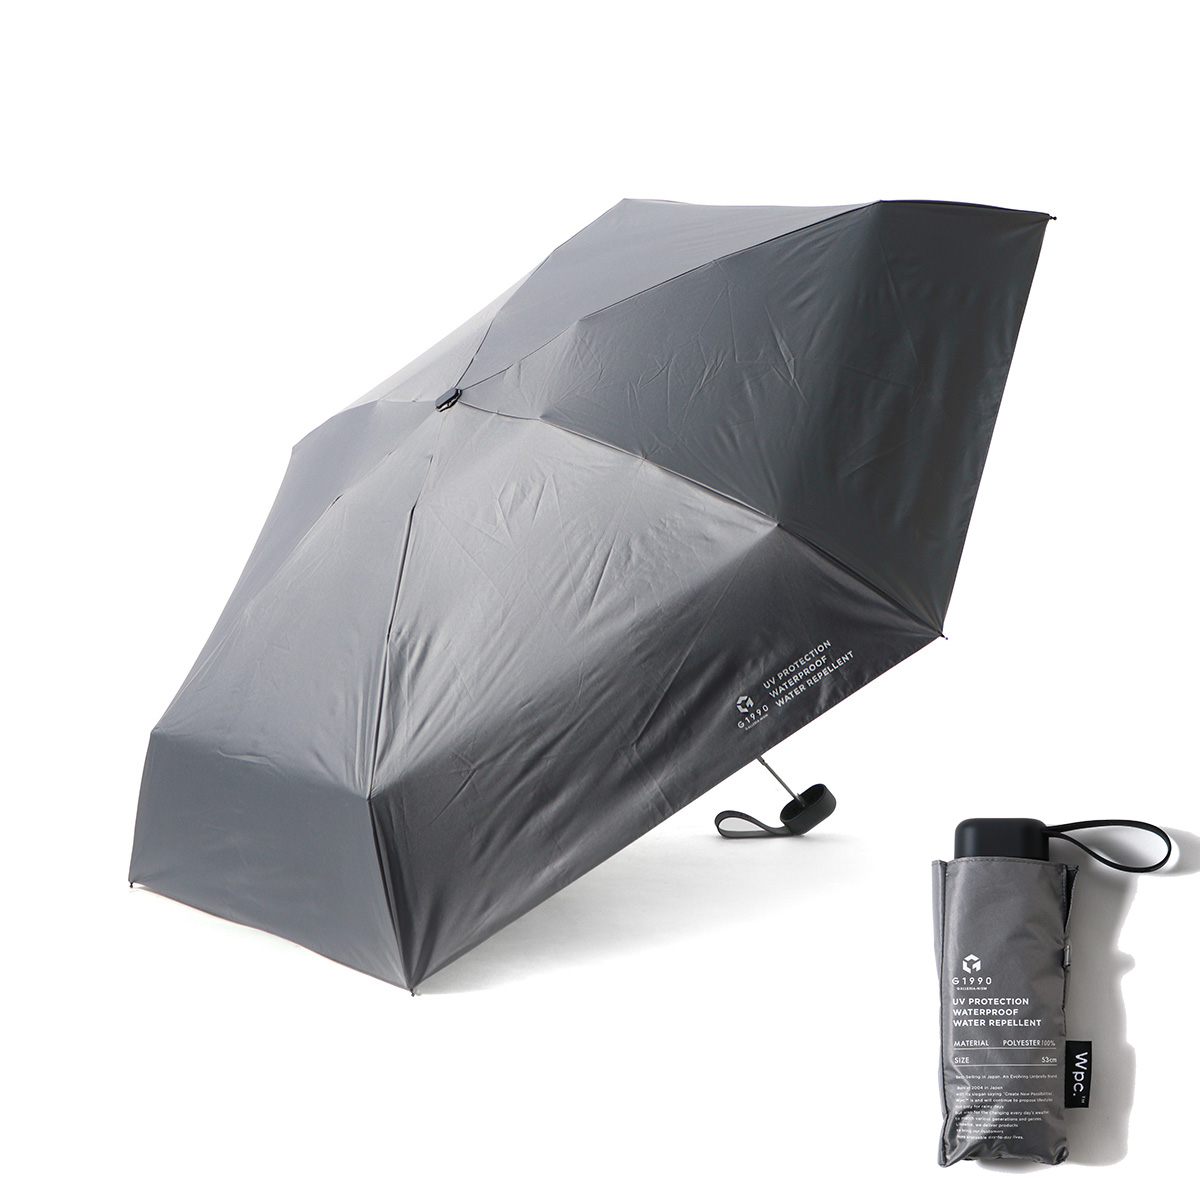 ジーイチキュウキュウゼロ 折りたたみ傘 G1990 Wpc 傘 日傘 雨傘 折り畳み傘 晴雨兼用 5...